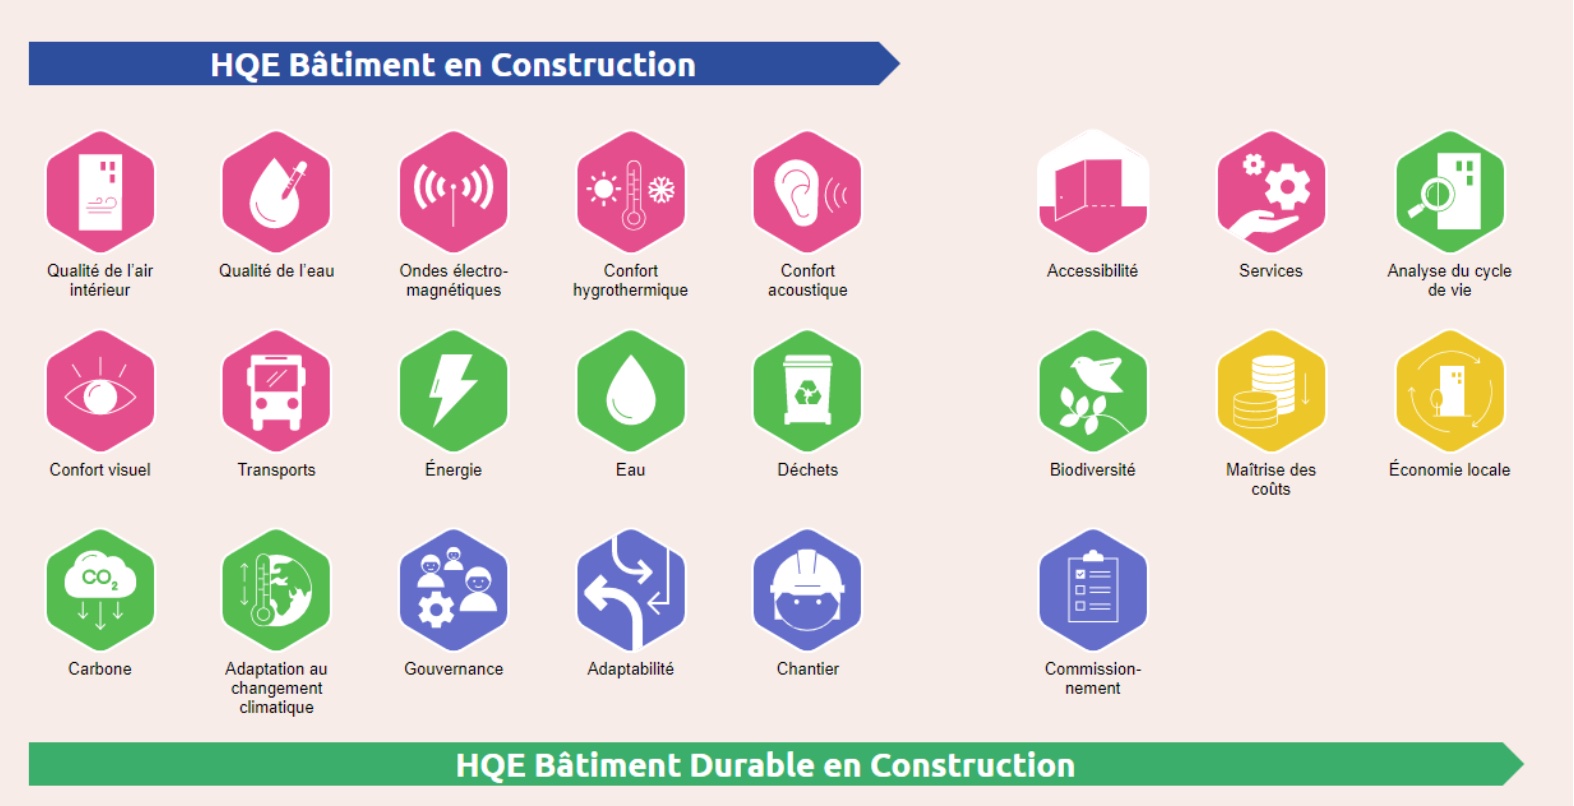 Thématiques couvertes par les certifications HQE Bâtiment et HQE Bâtiment durable - Crédit image : Certivea